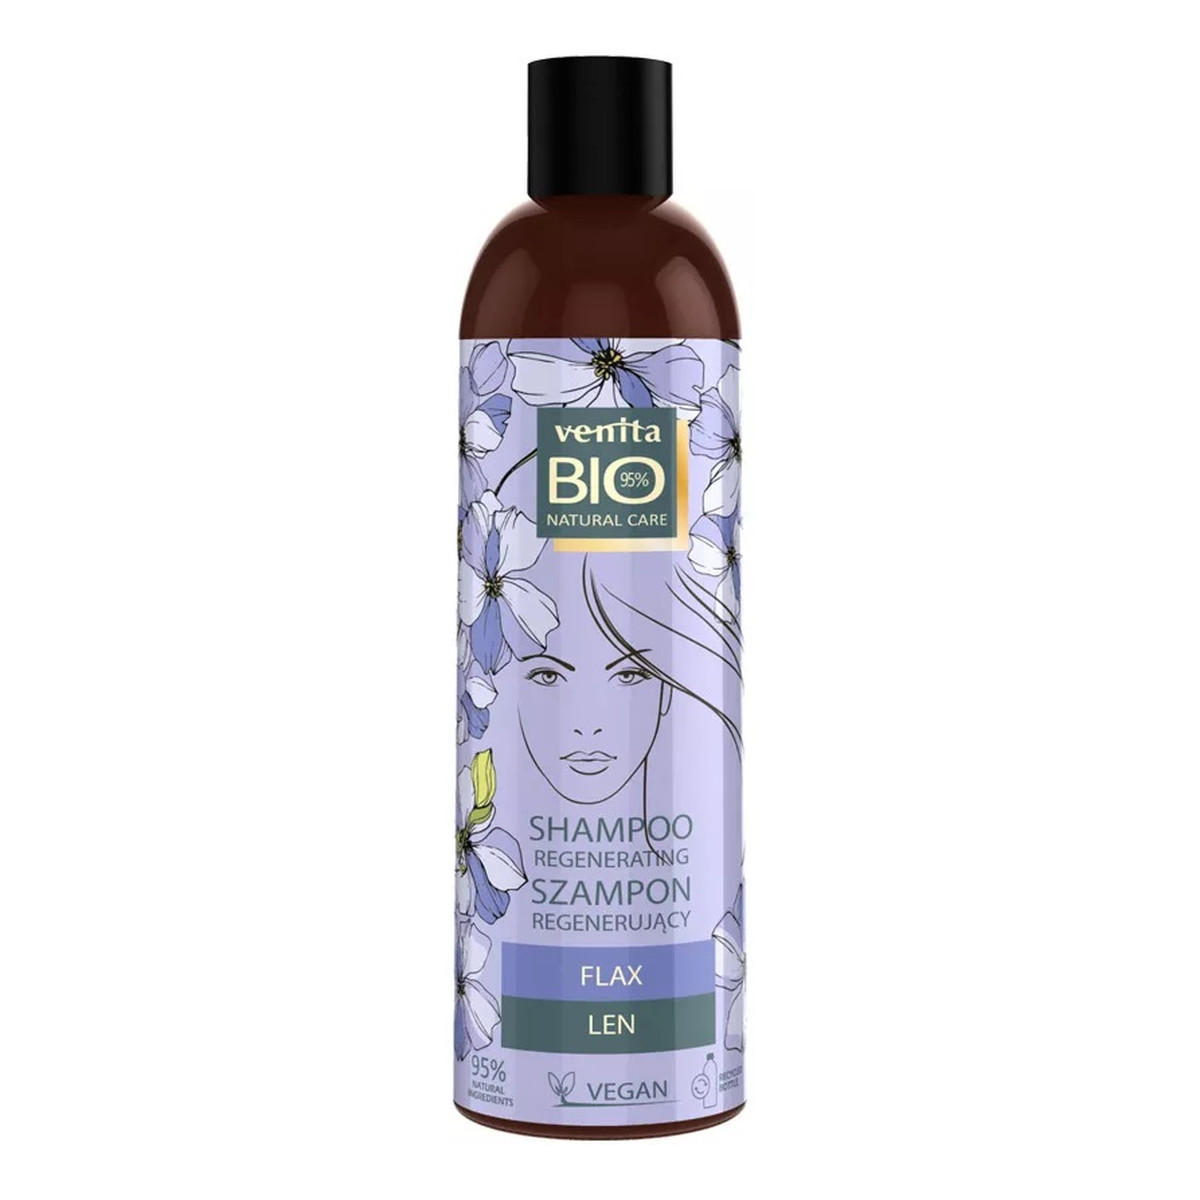 Venita Bio Natural Care len regenerujący szampon z ekstraktem z lnu do włosów zniszczonych i wypadających z tendencją do przetłuszczania 300ml